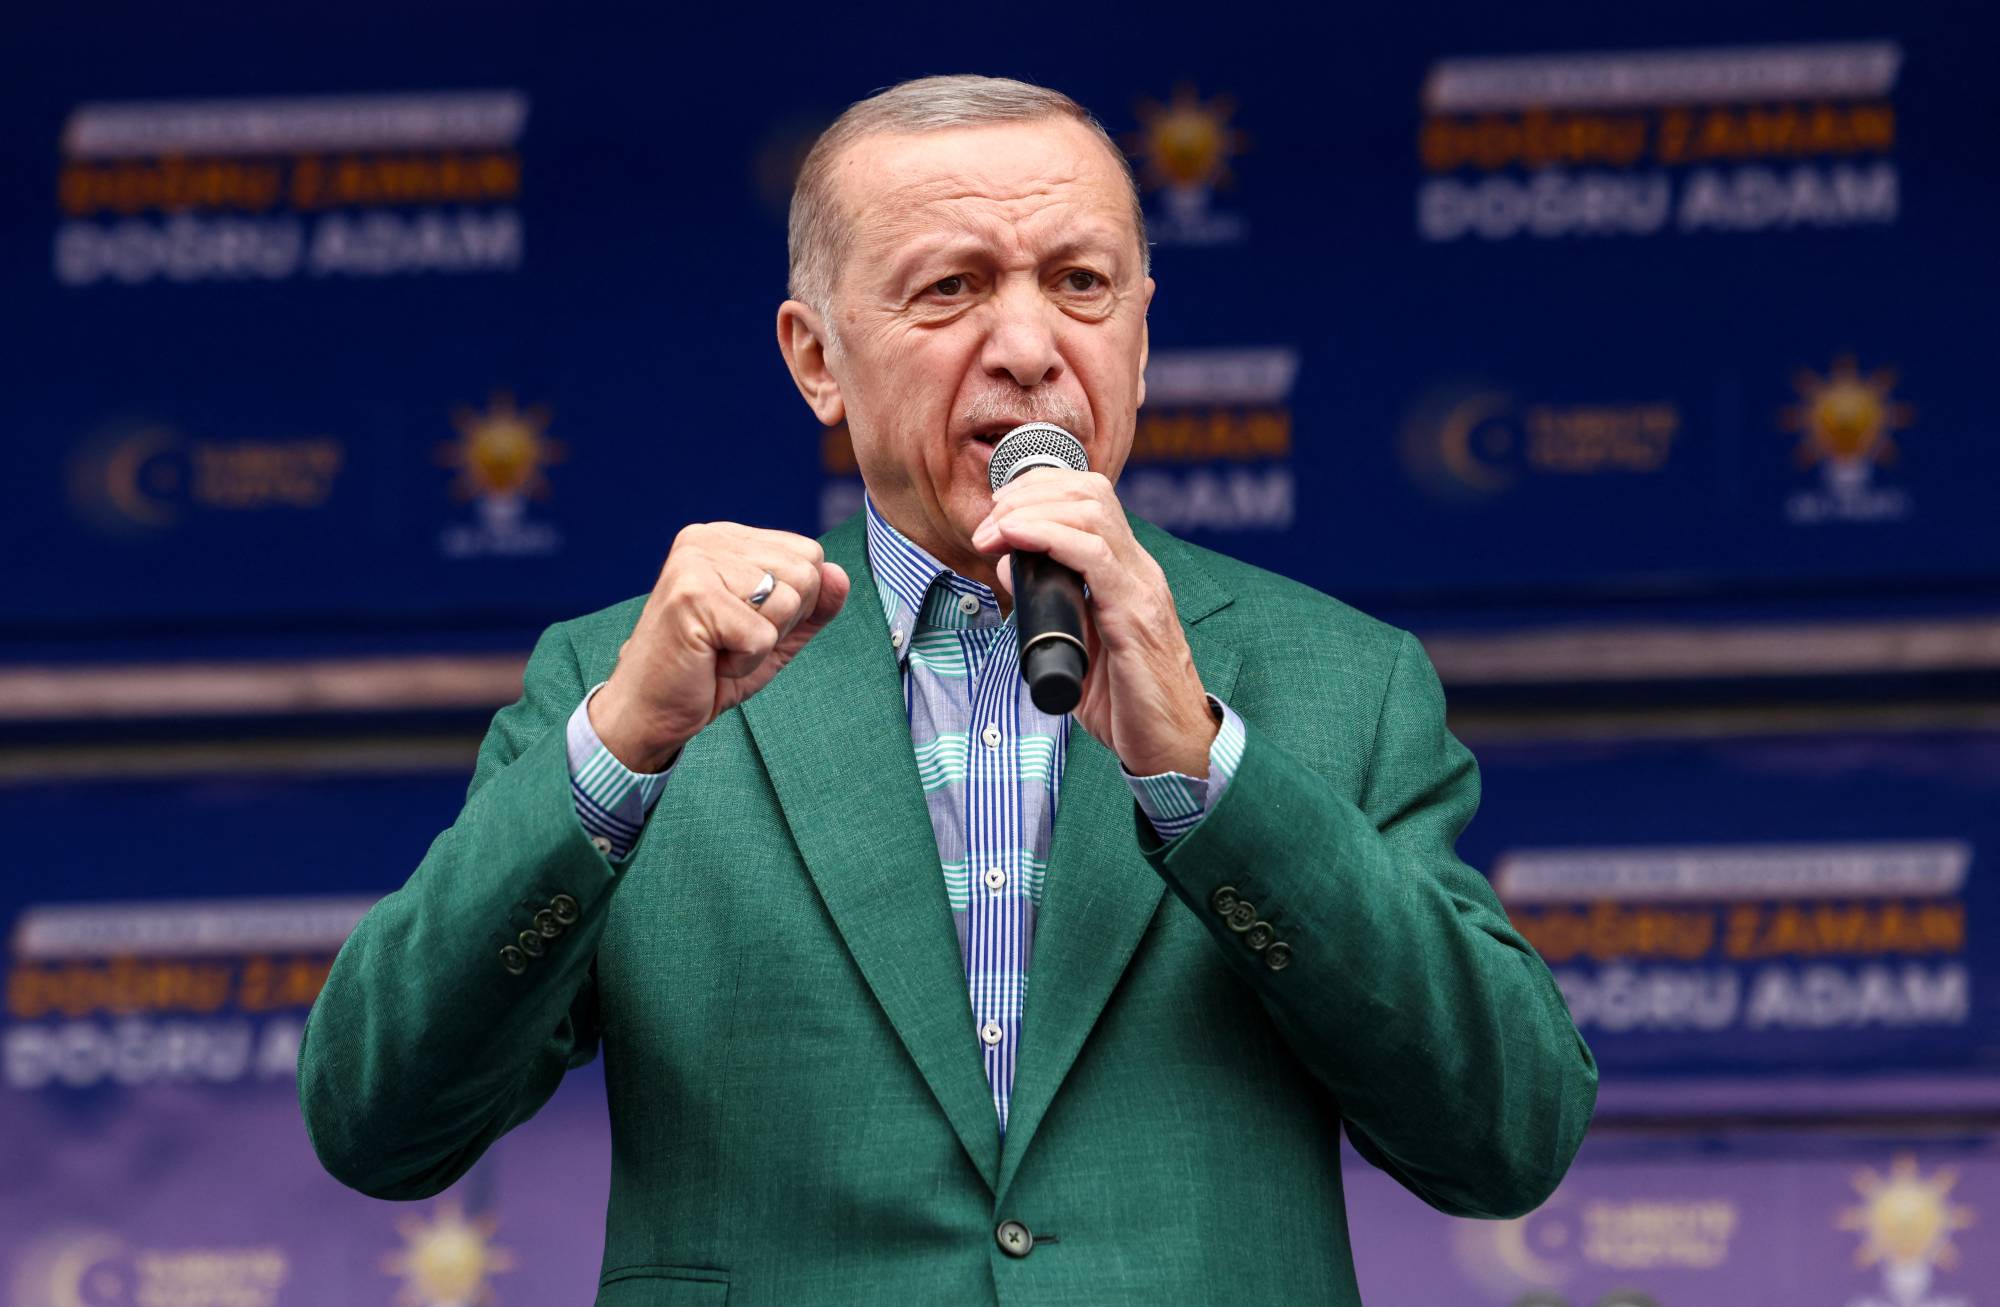 Cumhurbaşkanı Erdoğan'dan Açıklama! Emeklilere Pazartesi Ek Ödemenin Yatacak